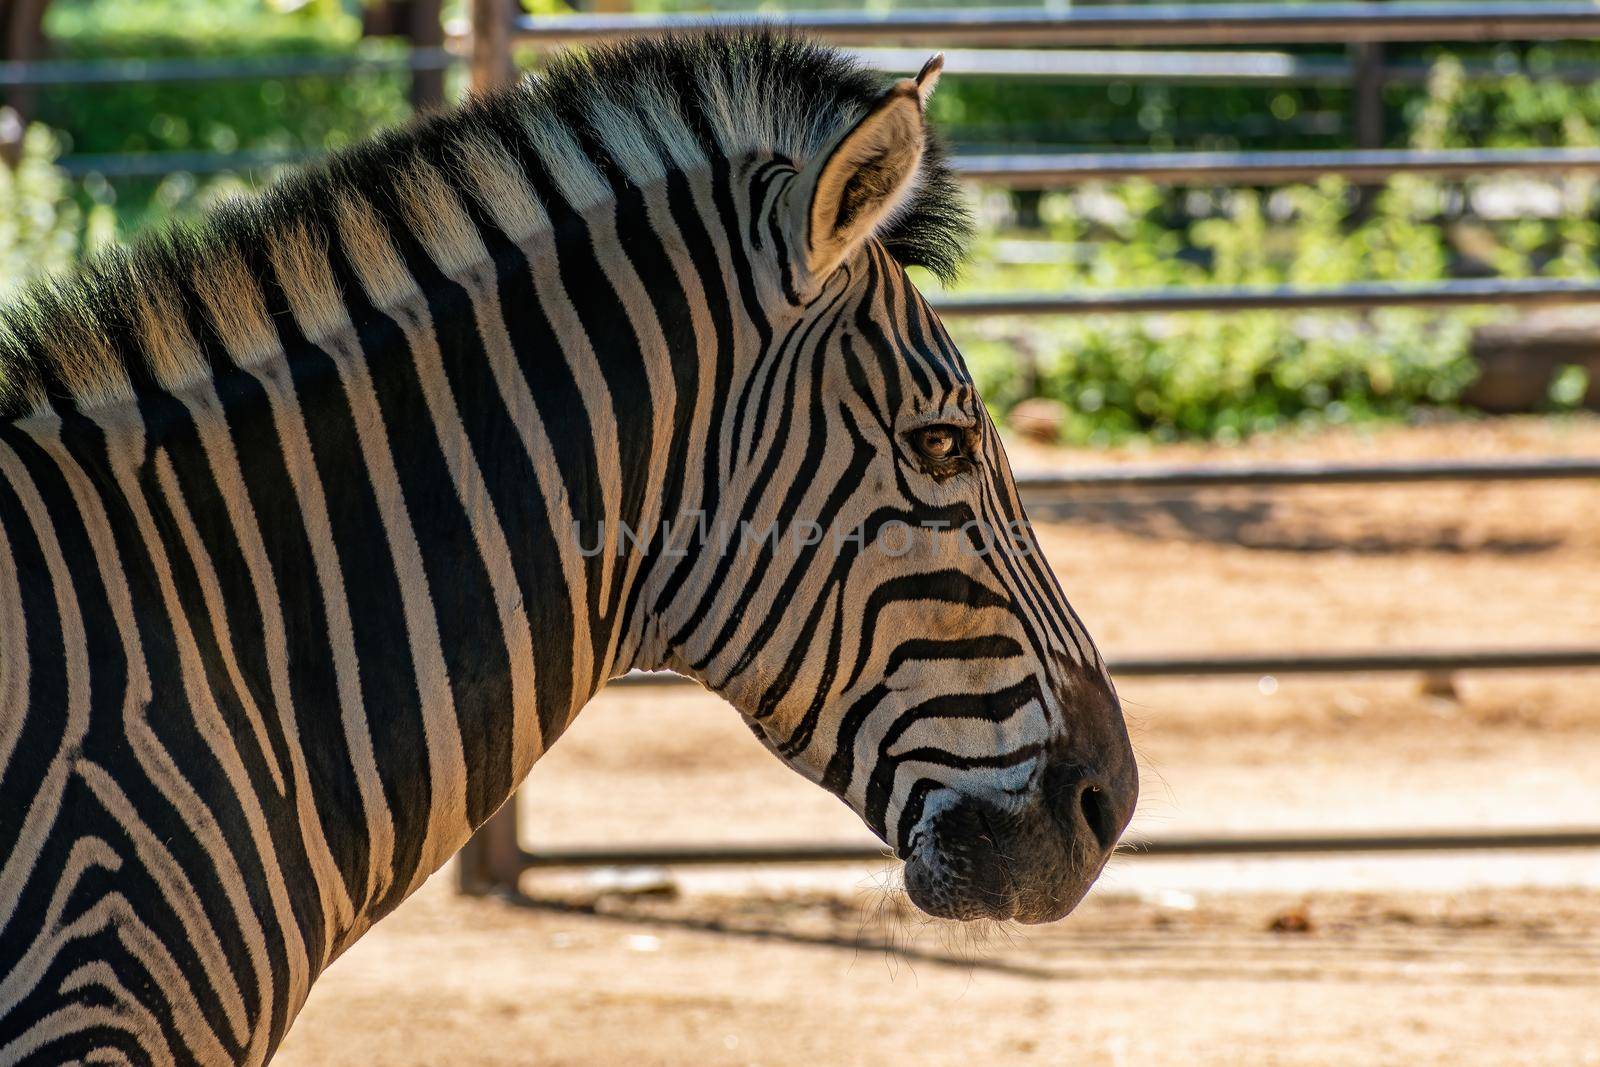 Chapman's zebra (Equus quagga chapmani) Hodonin Zoo, Czech Republic, South Moravia